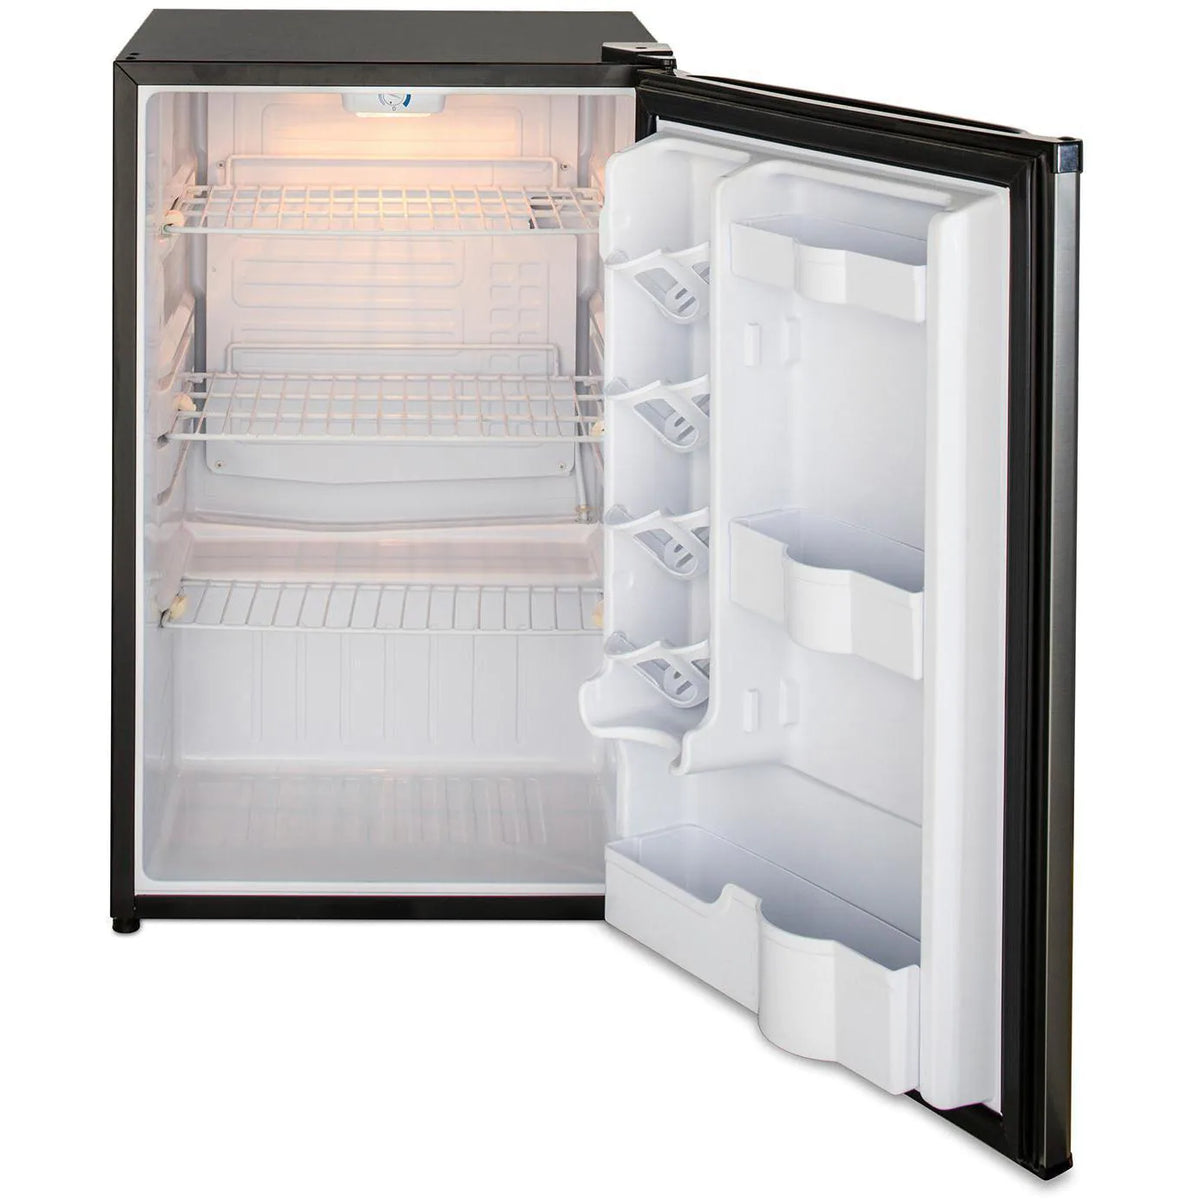 Blaze 20 Inch Outdoor Compact Refrigerator Door Open with Light On